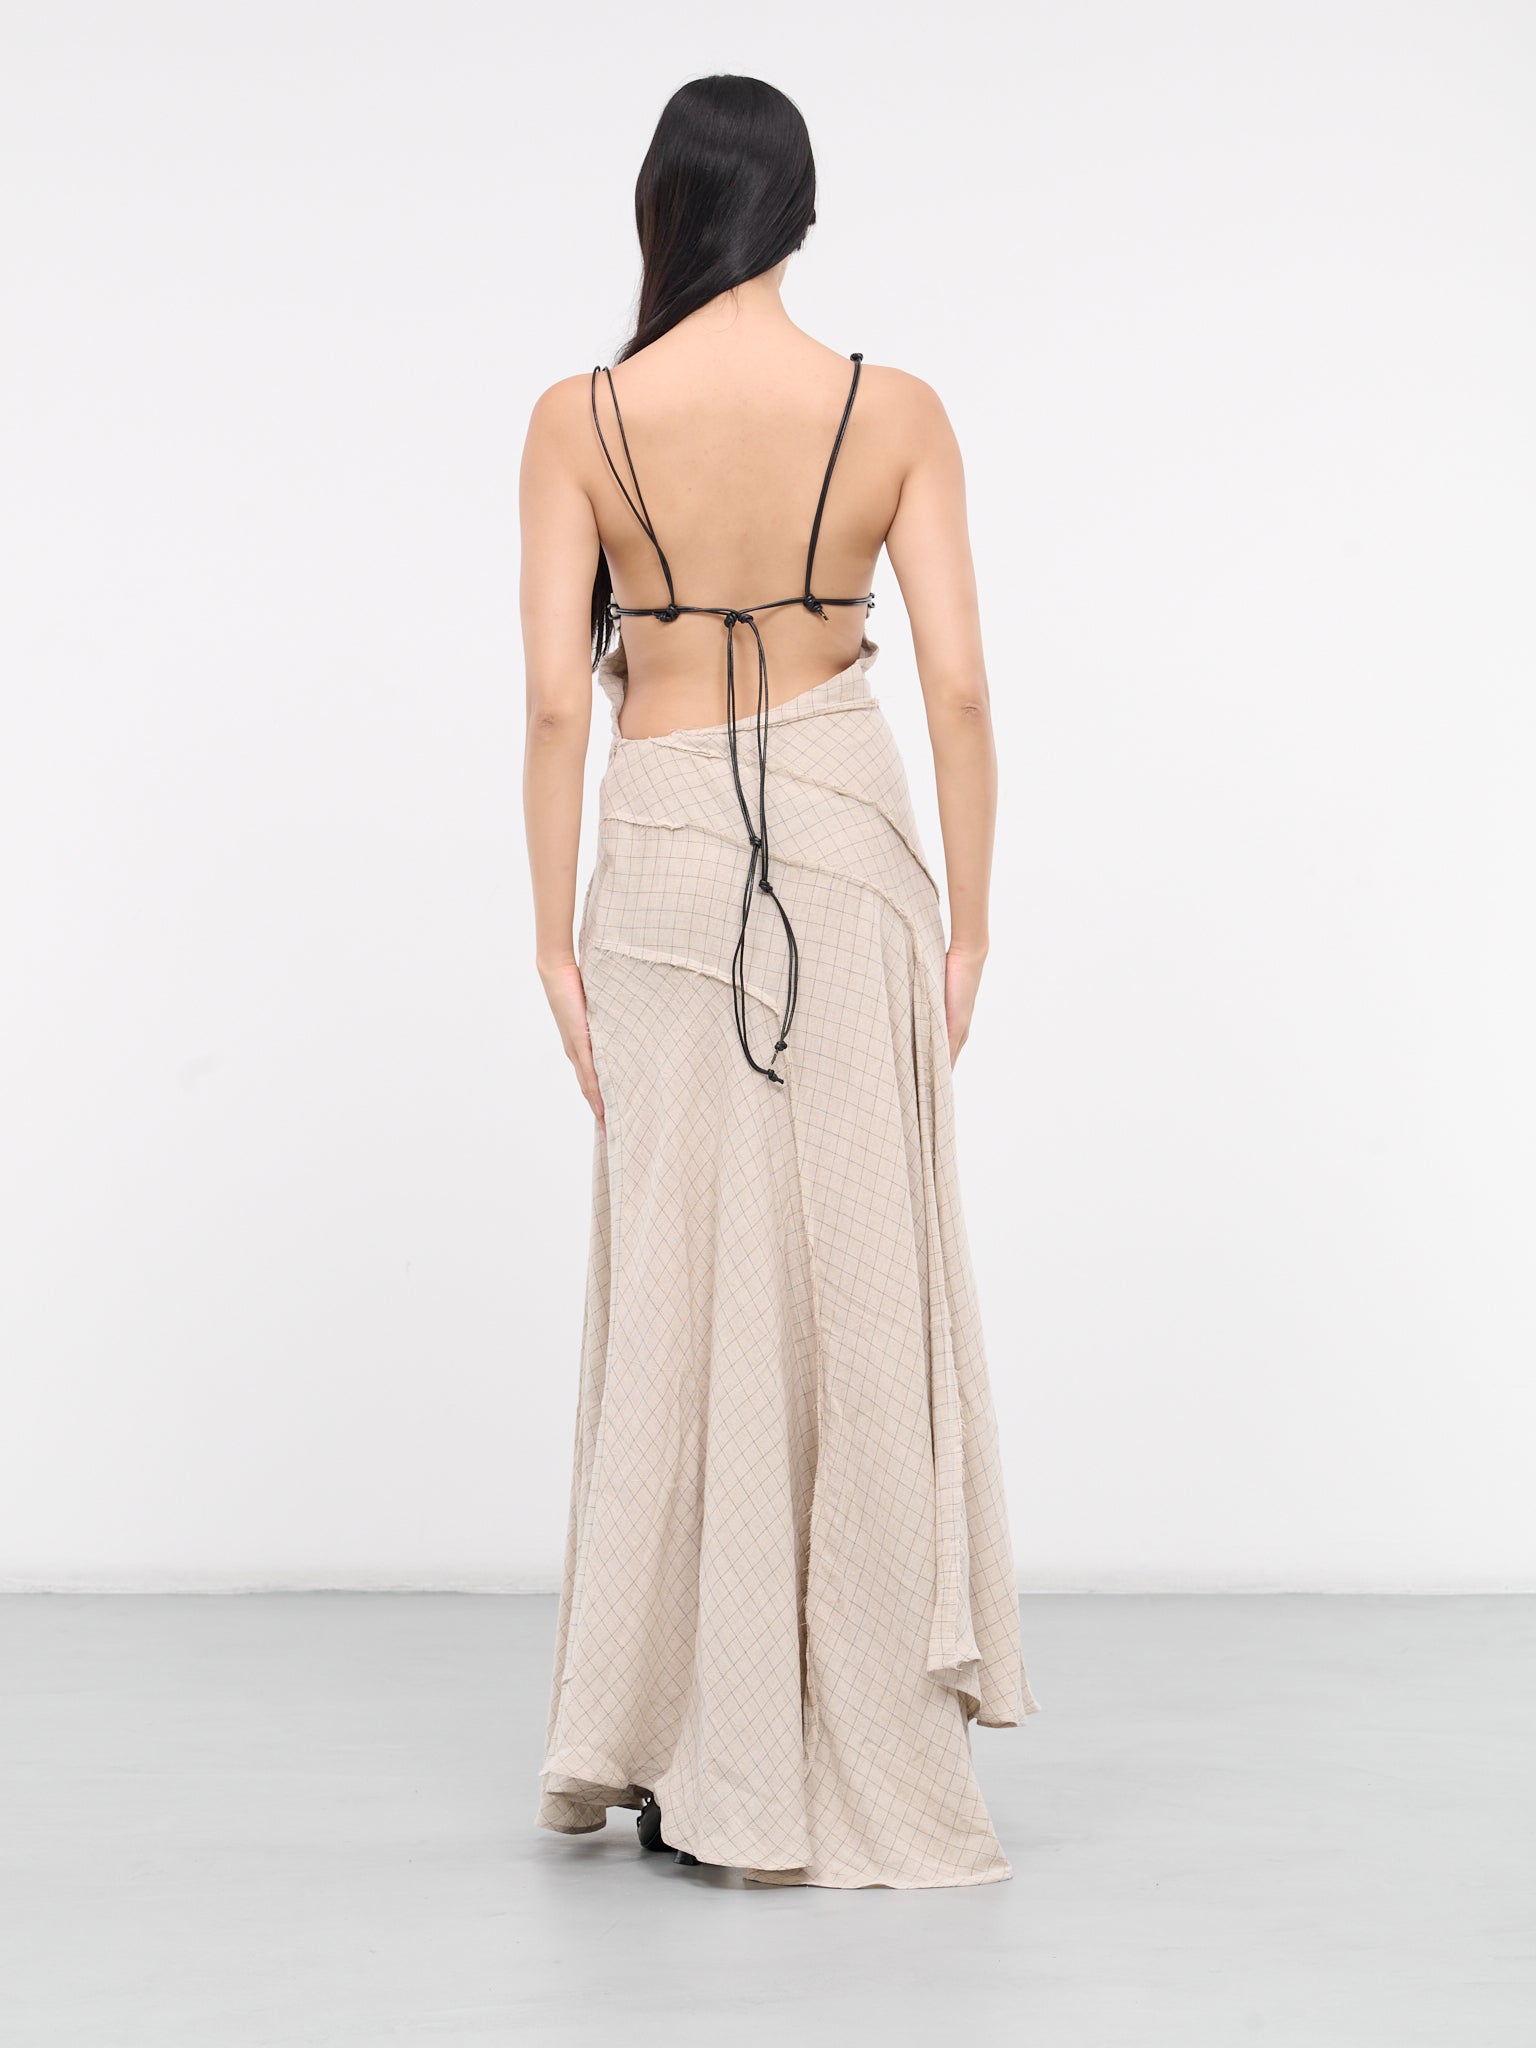 Asymmetric Slip Dress (DR04-01-NATURAL-AIA)